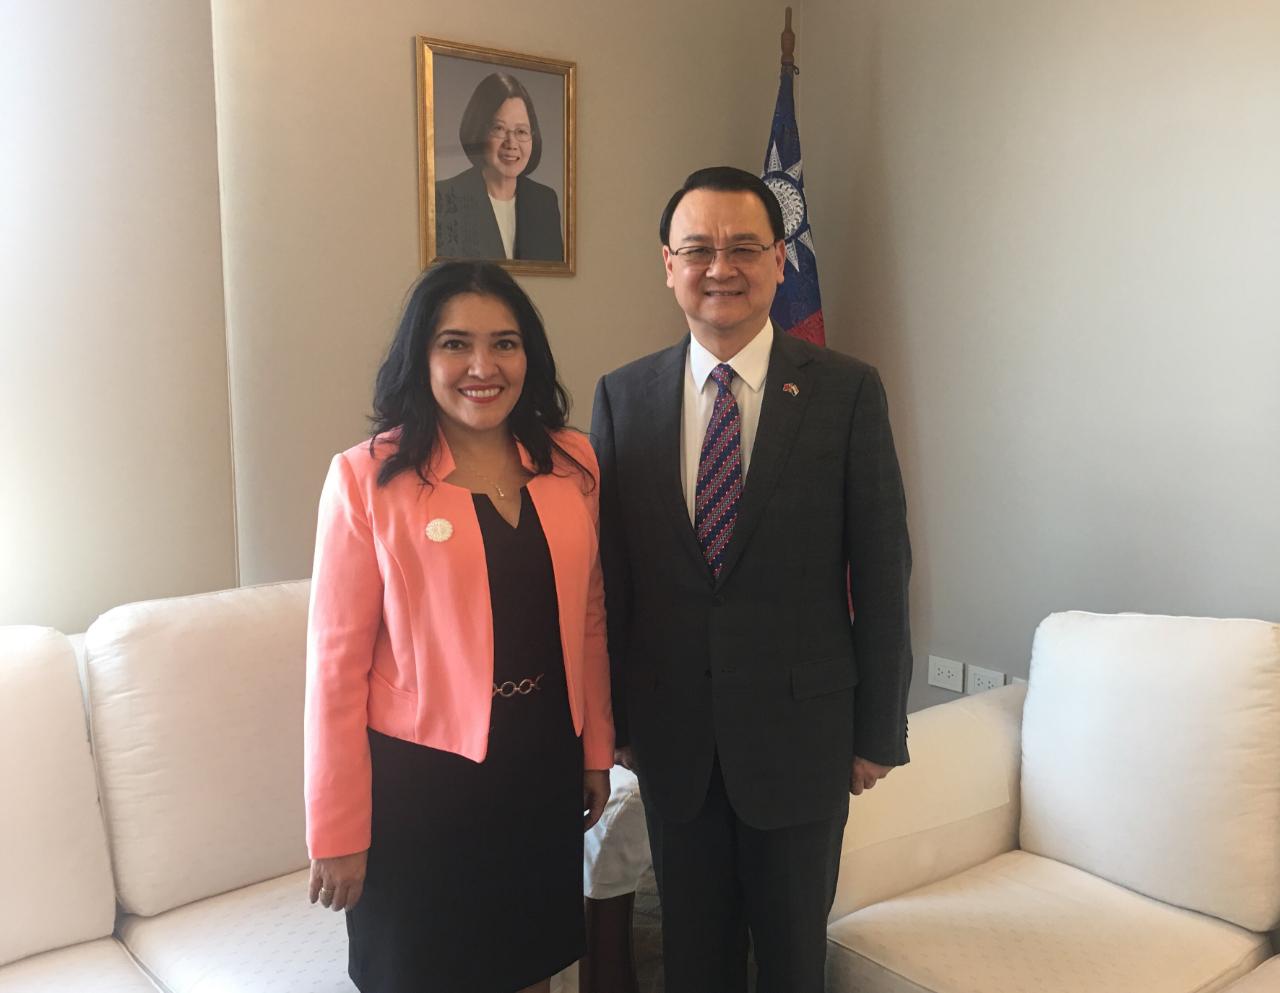 La Ministra de la Secretaría Nacional de Turismo (SENATUR), Sofía Montiel visitó al Embajador de la República de China (Taiwán), Dr. Diego L. Chou, el día 19 de septiembre, 2018. Han intercambiado opiniones sobre la cooperación bilateral en el turismo.